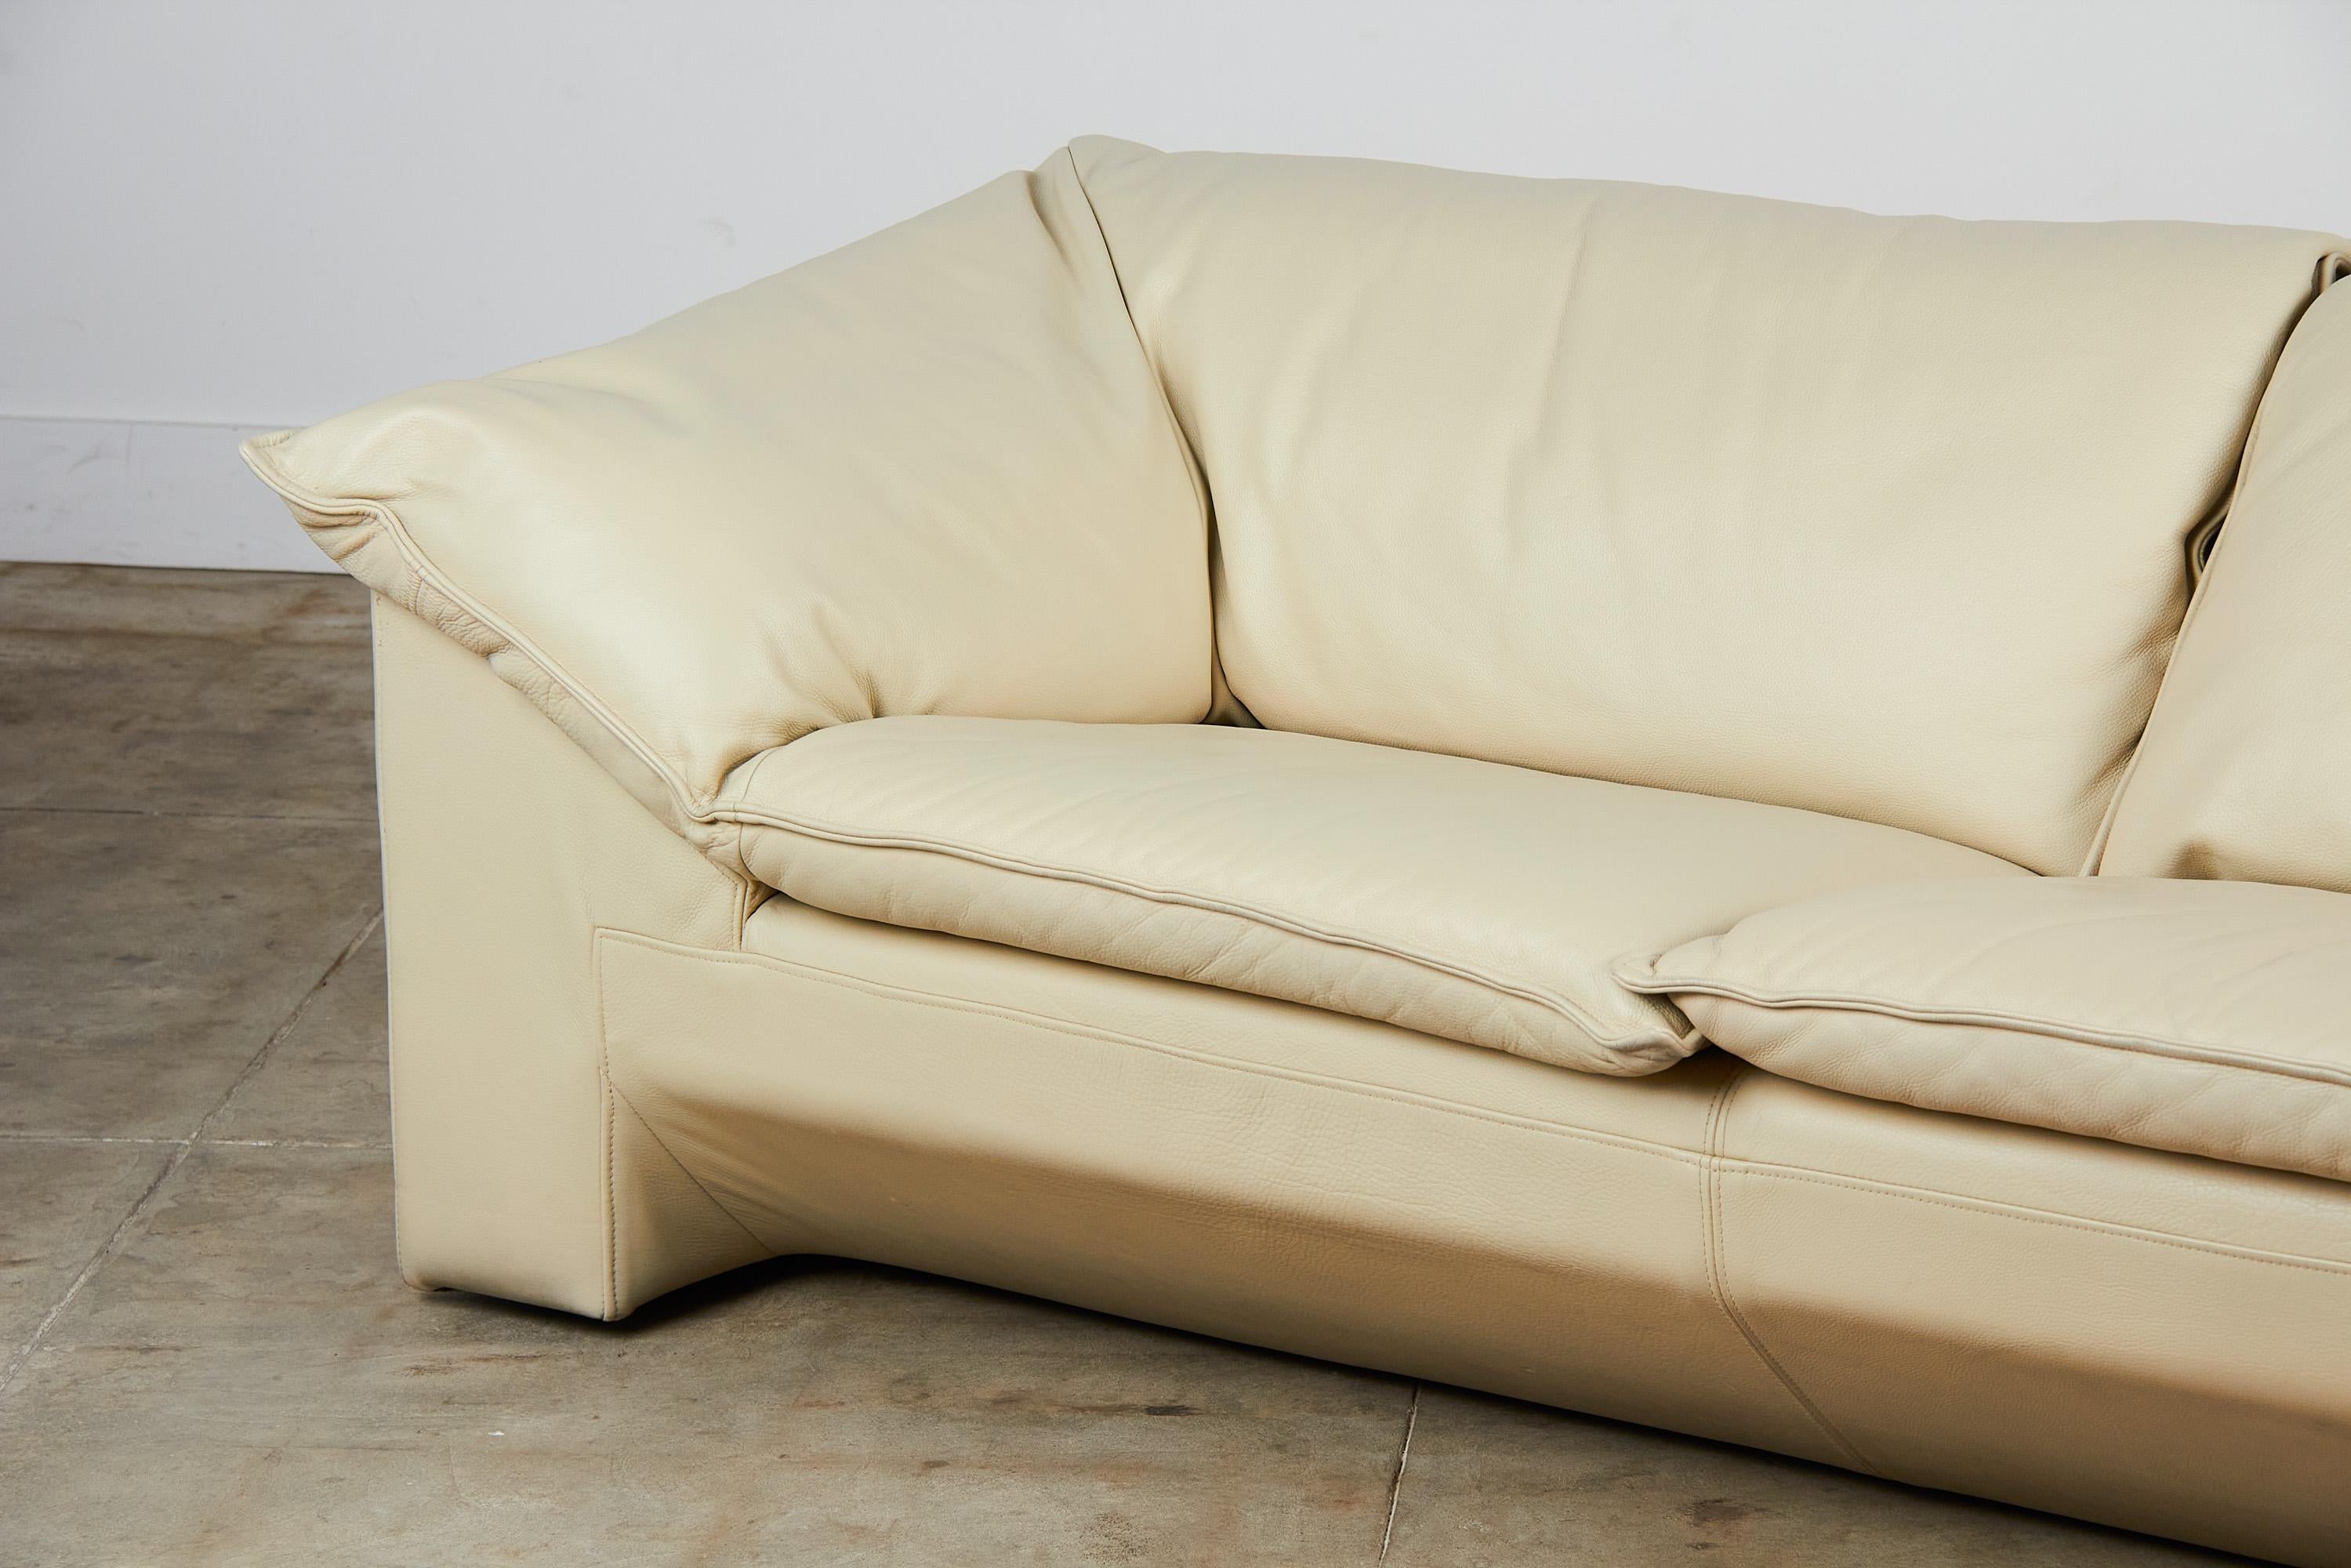 Niels Eilersen “Arizona” Sofa by Jens Juul Eilersen In Good Condition In Los Angeles, CA